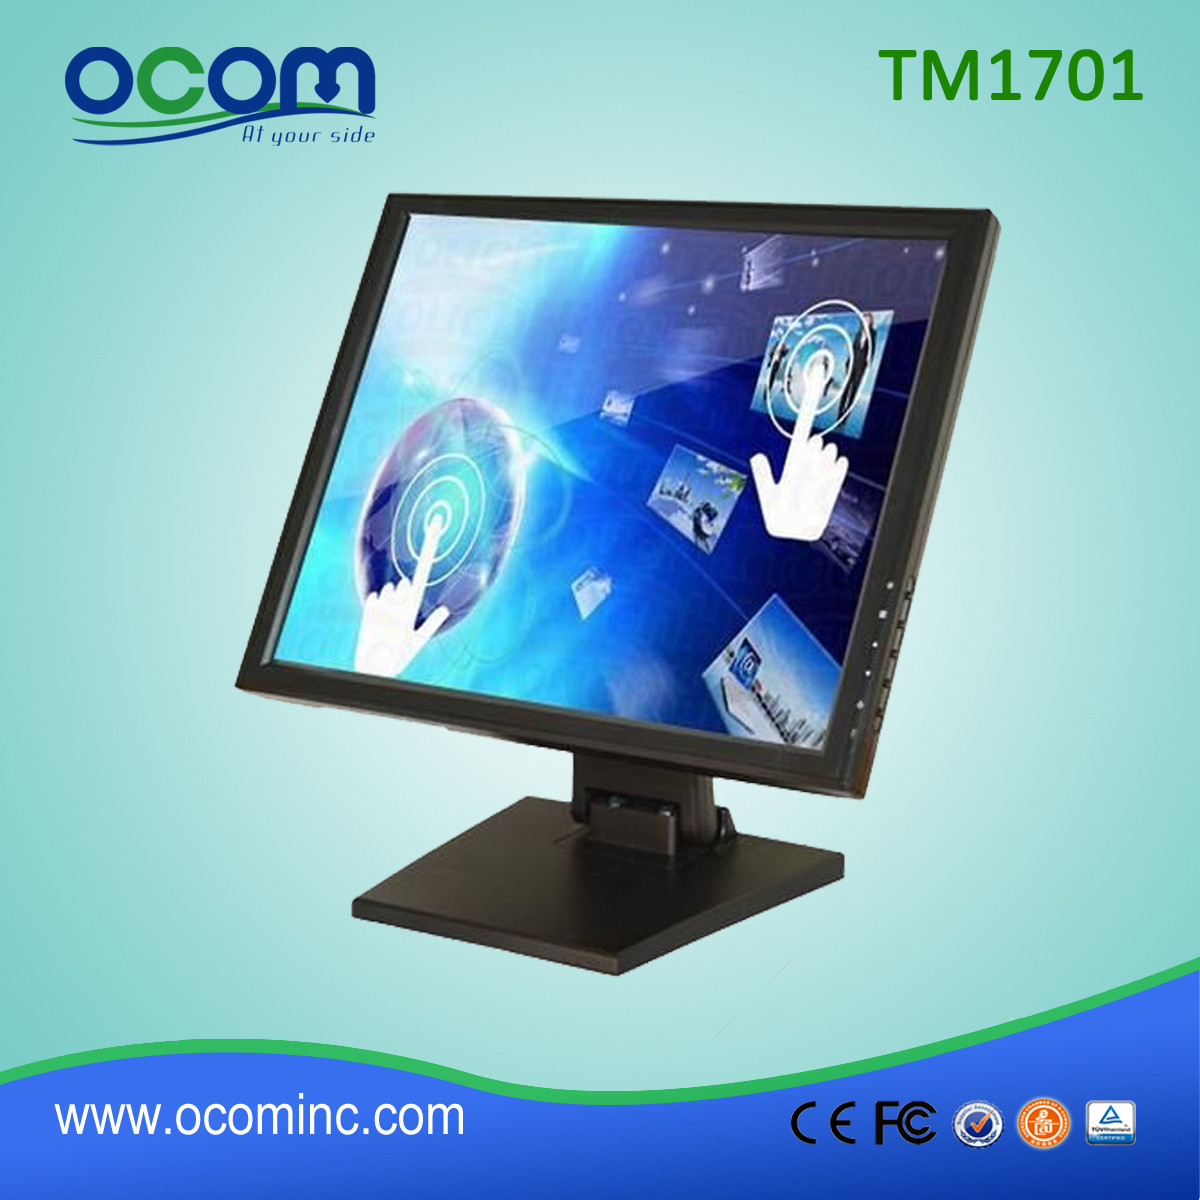 TM1701 17 pouces 5wire résistive LCD Monitor pour système POS